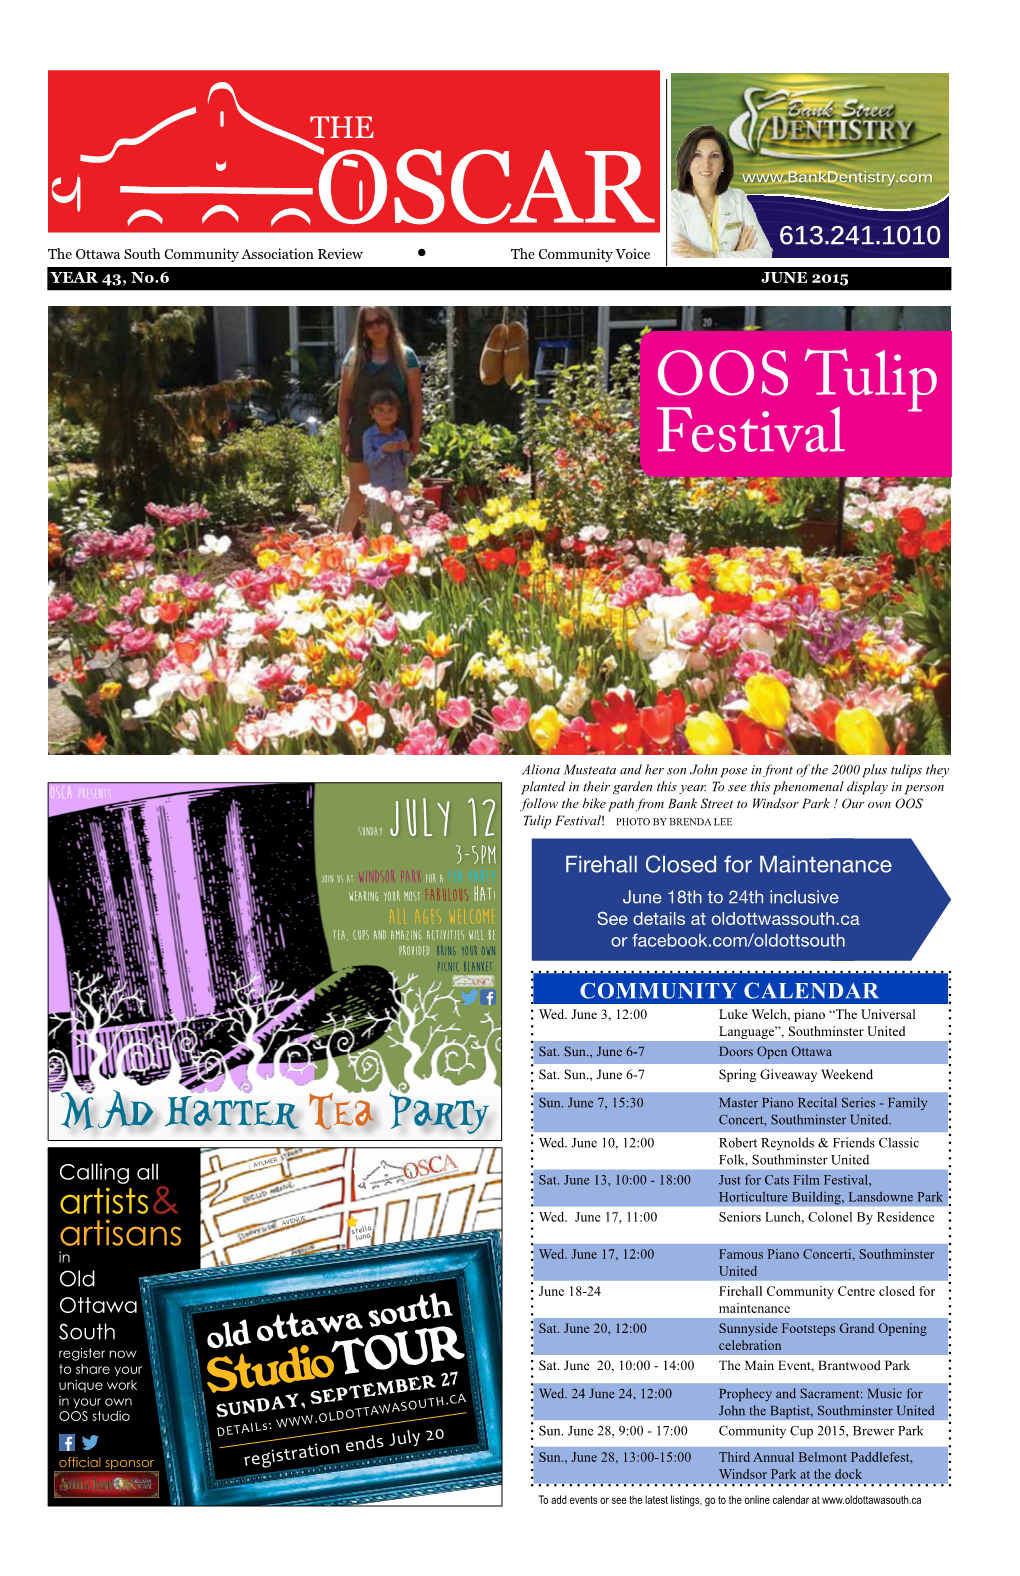 OOS Tulip Festival